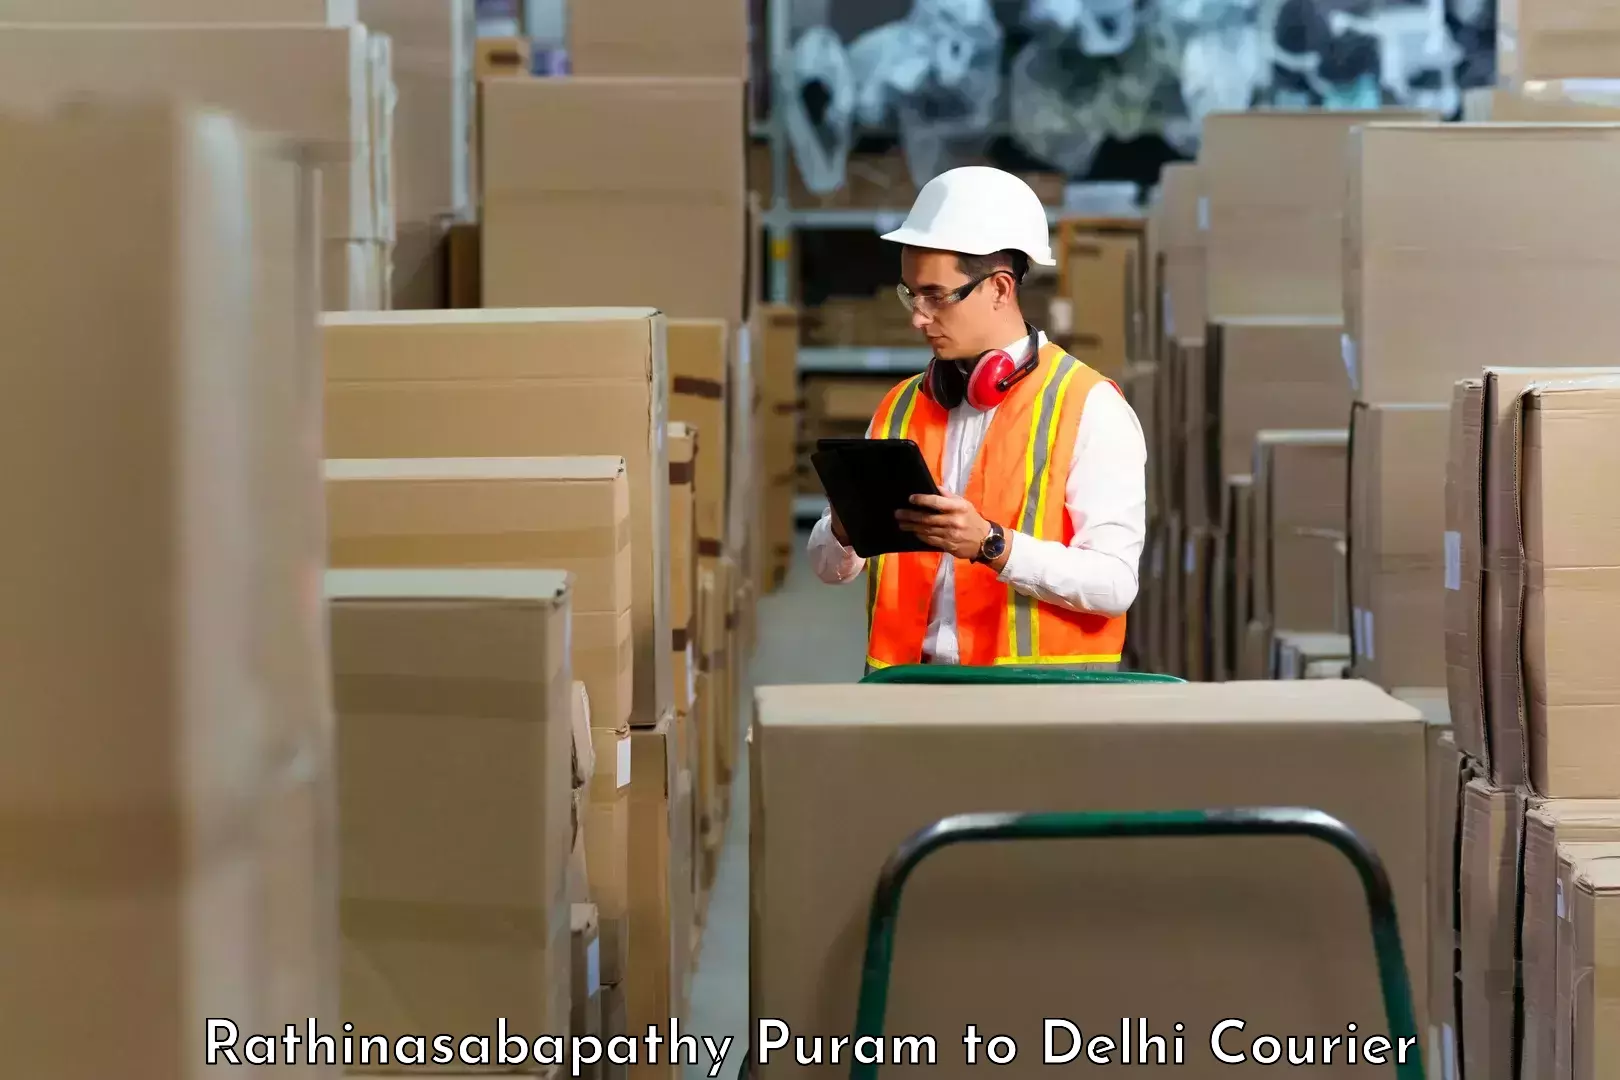 Seamless shipping service Rathinasabapathy Puram to Jamia Millia Islamia New Delhi